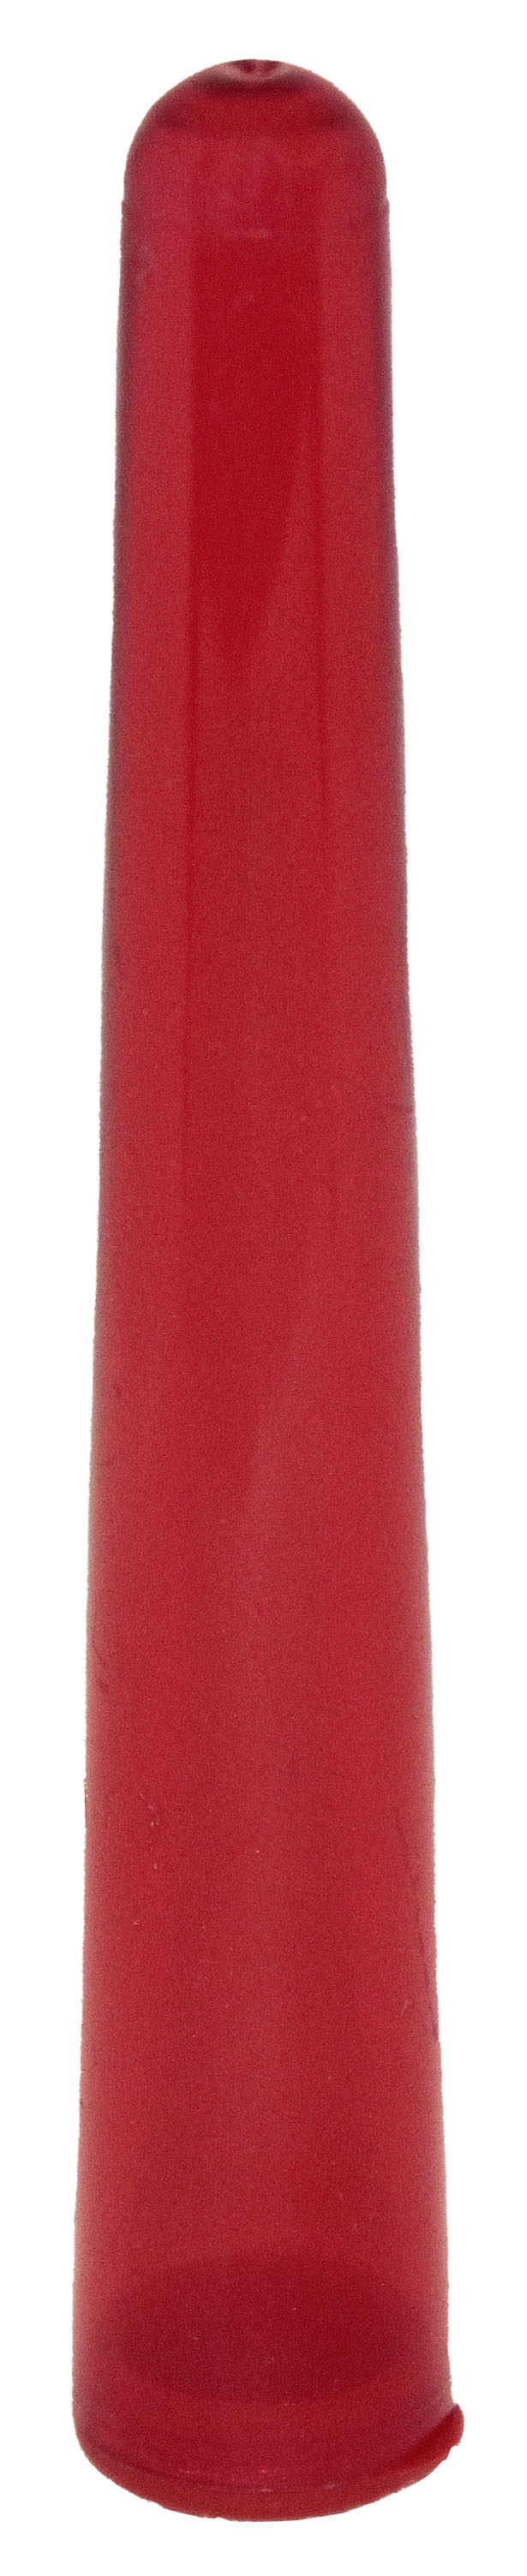 Porta-J-Eco-110-Mm-Rosso-Trasparente